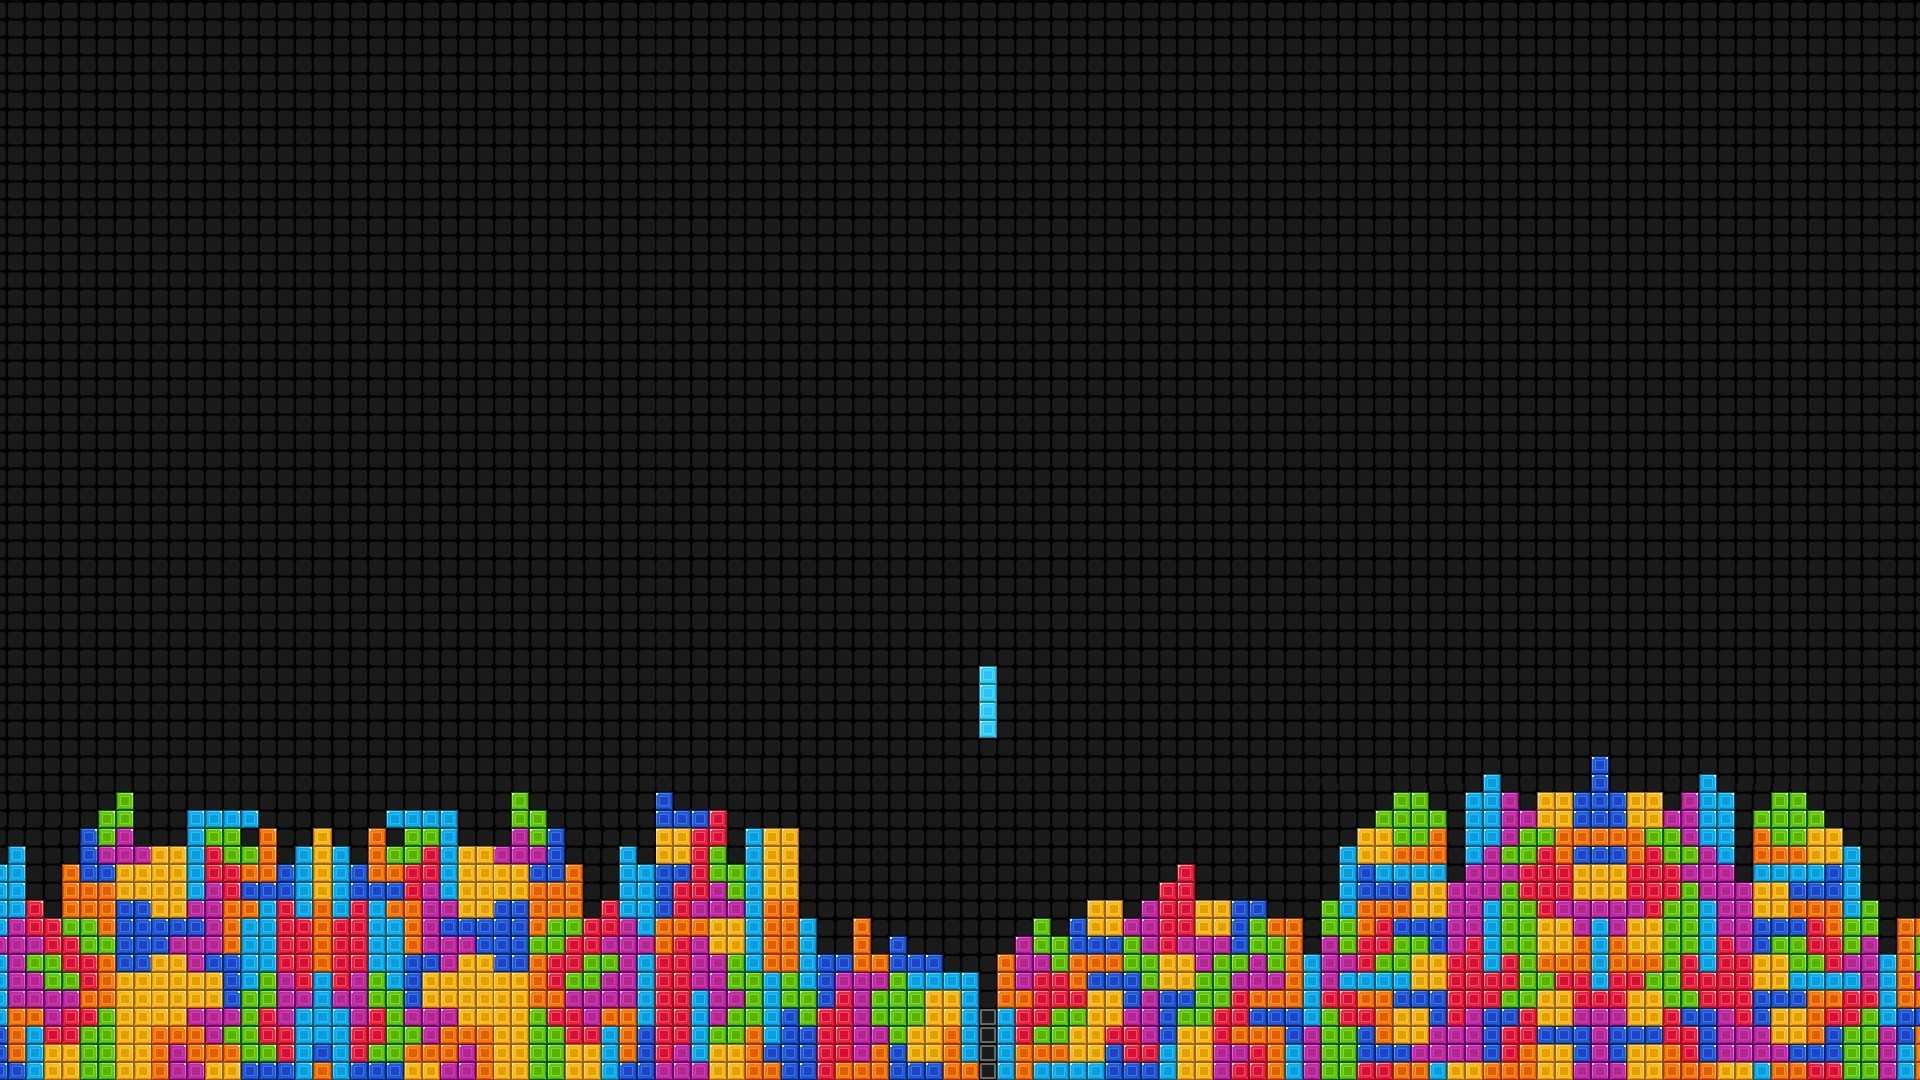 Tetris Facebook Cover wallpaper